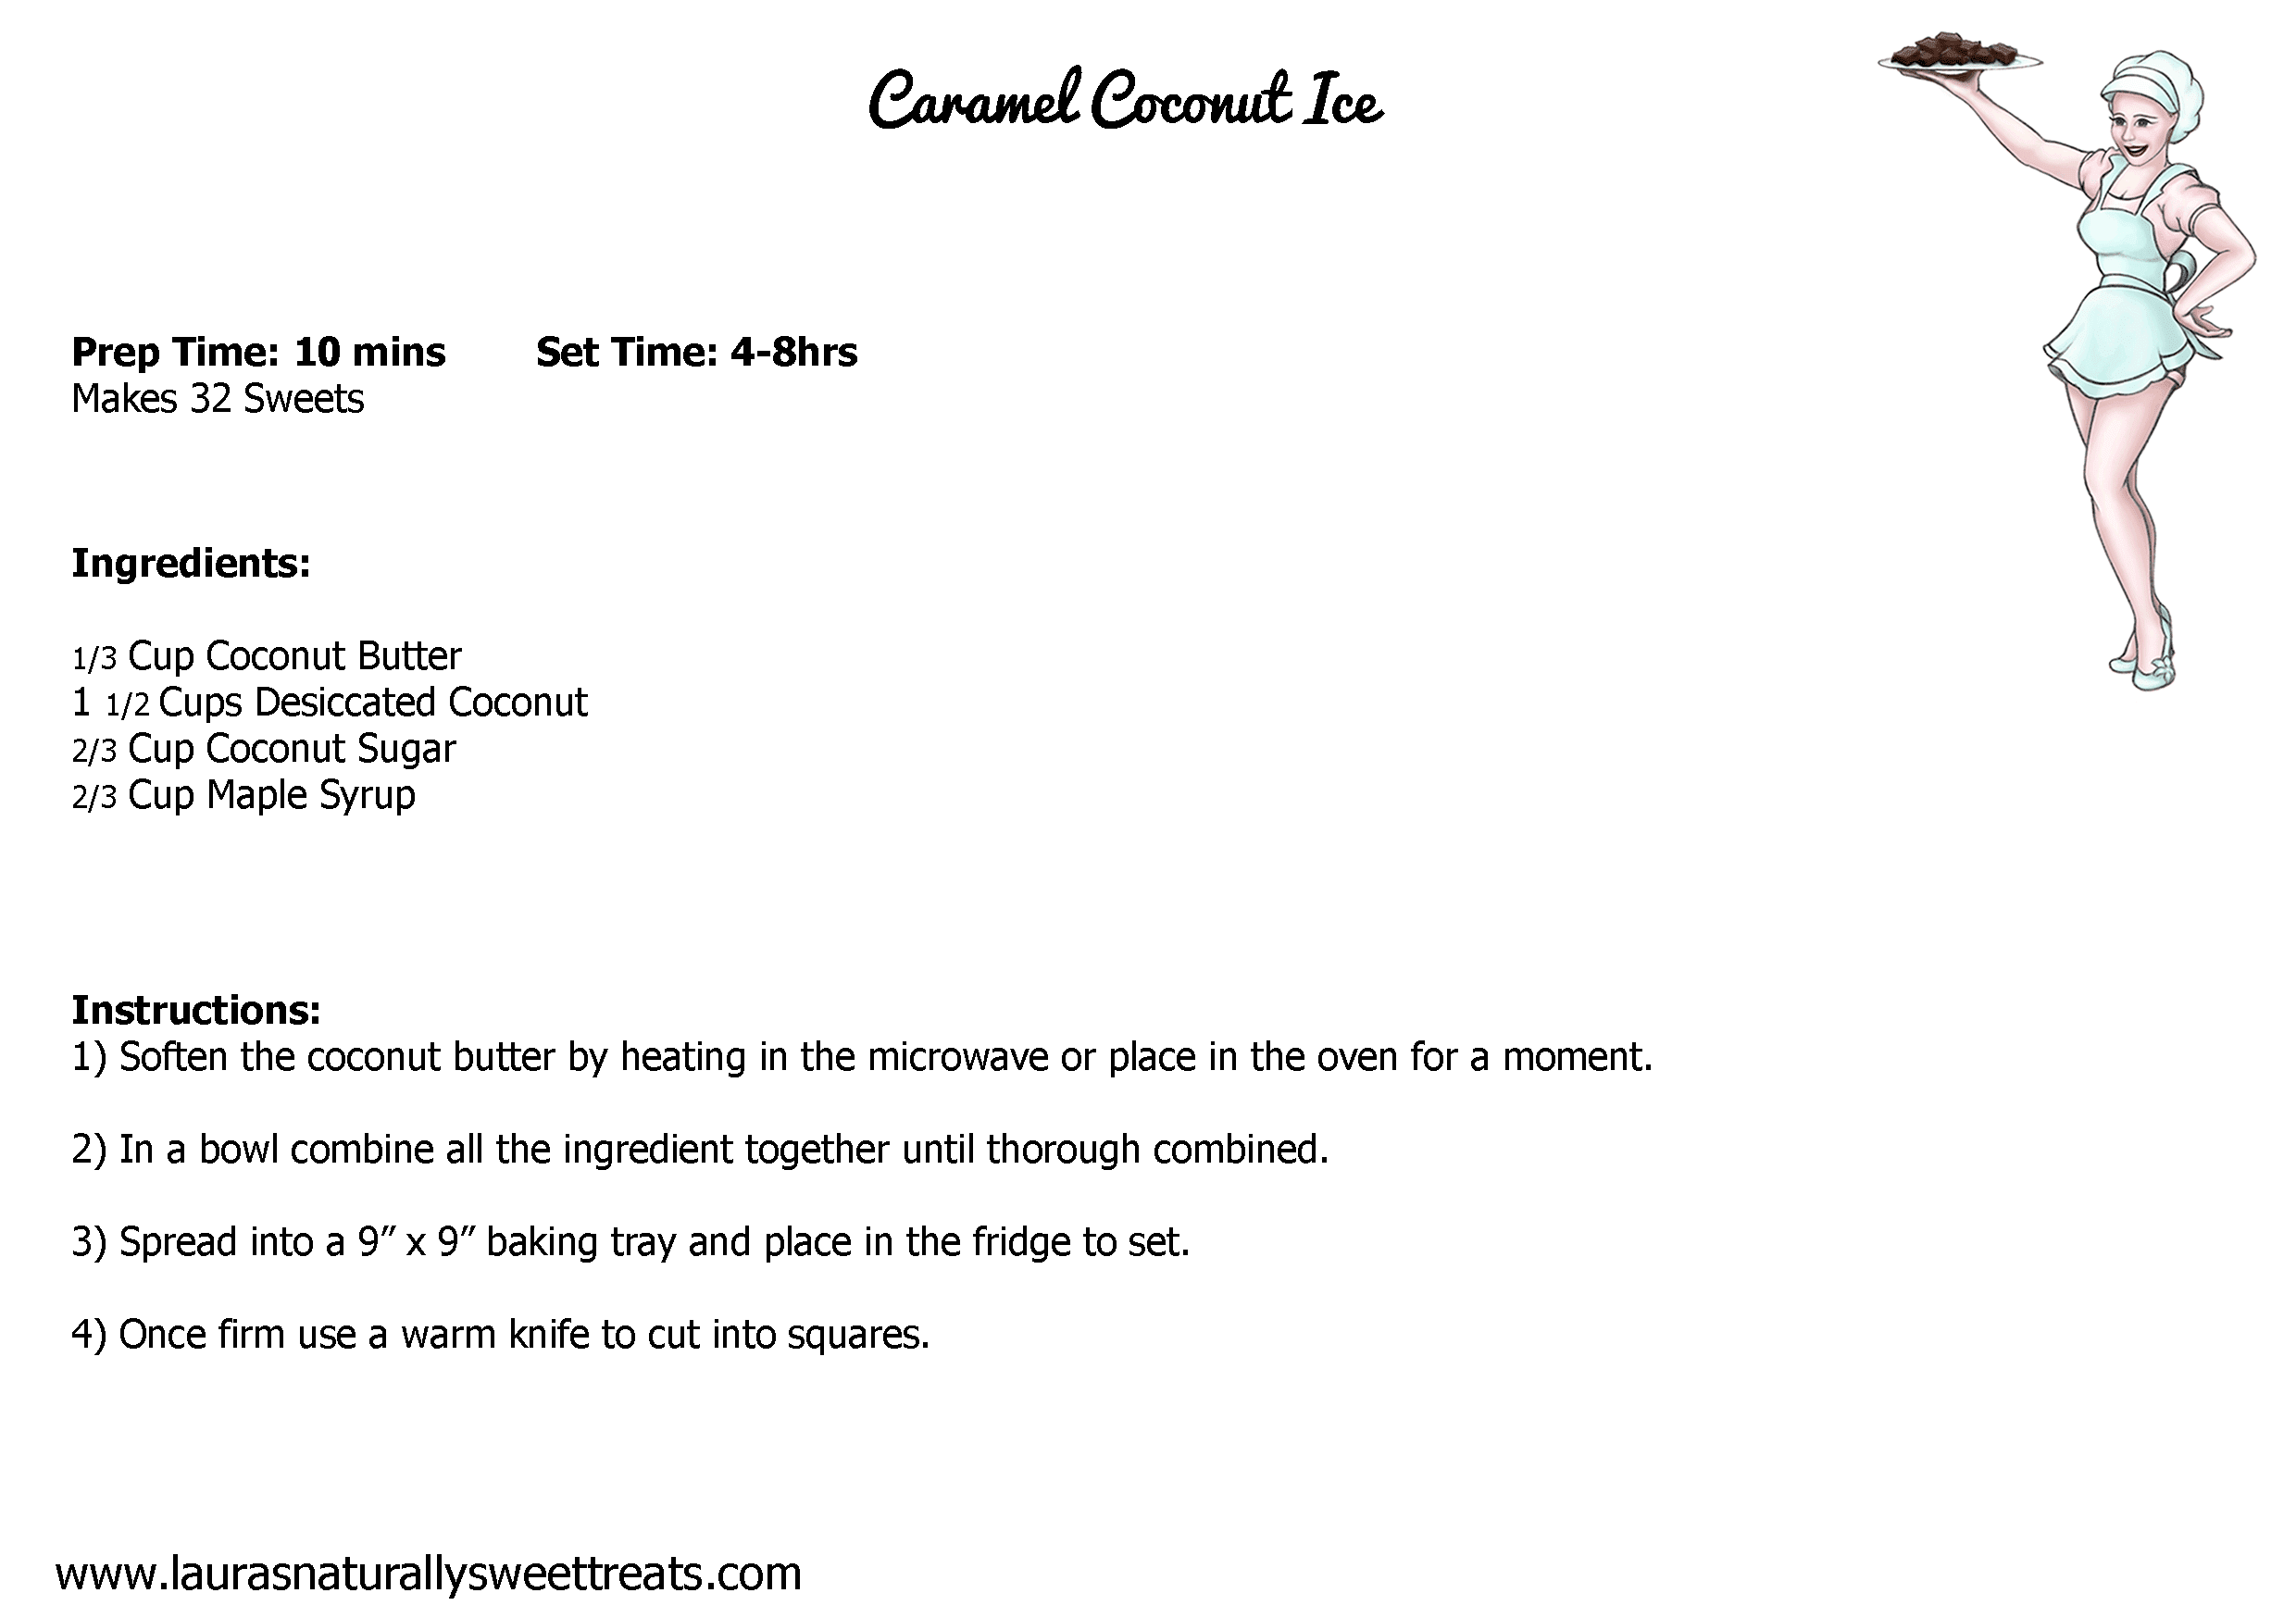 caramel-coconut-ice-recipe-card